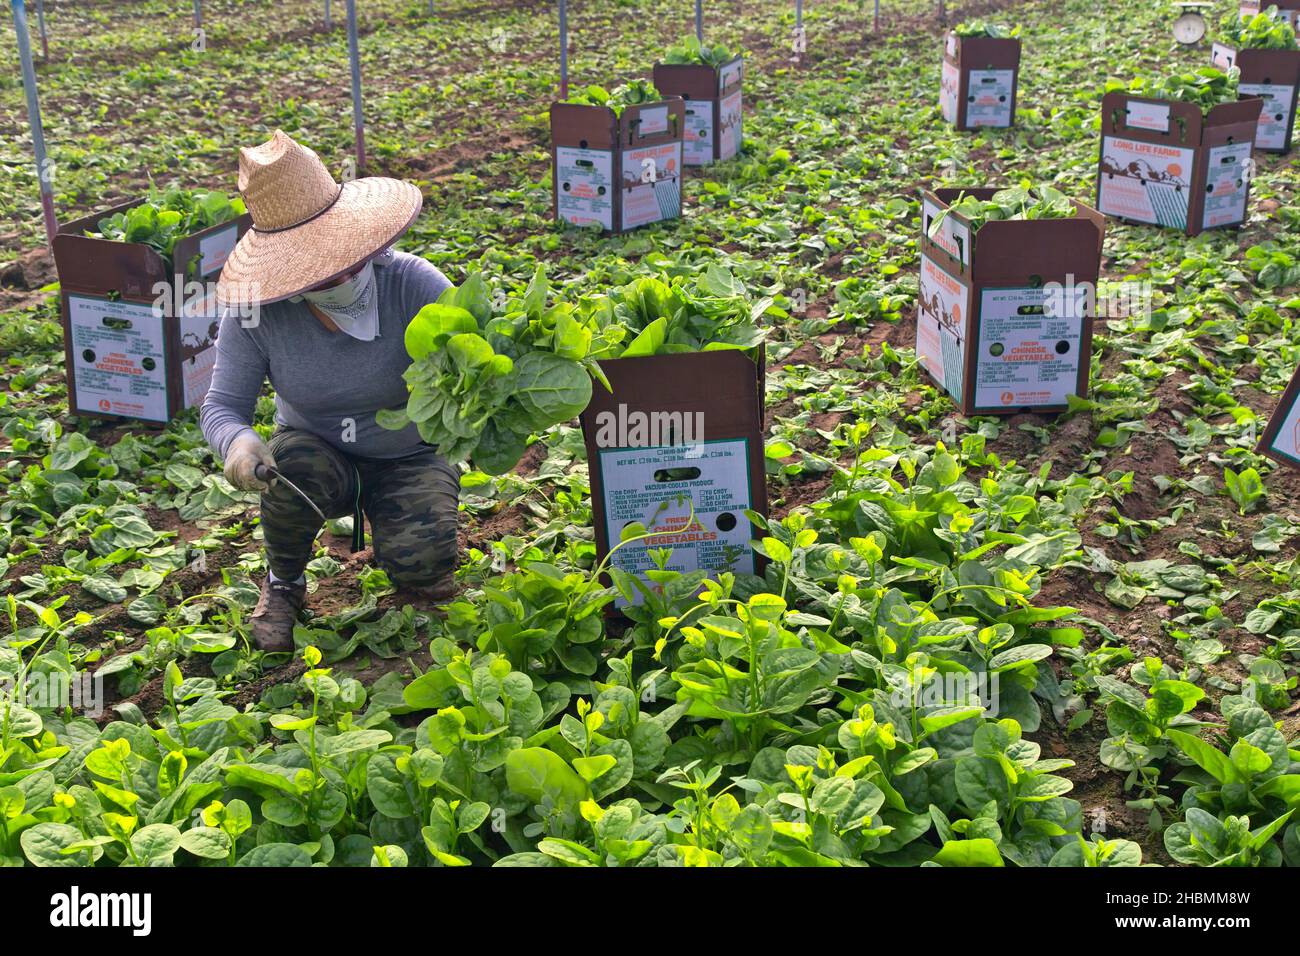 Trabajador hispano cosechando y empacando Malabar Spinach (Rau Mong Toi) 'Basella Alba' creciendo en invernadero, vegetales asiáticos. Foto de stock